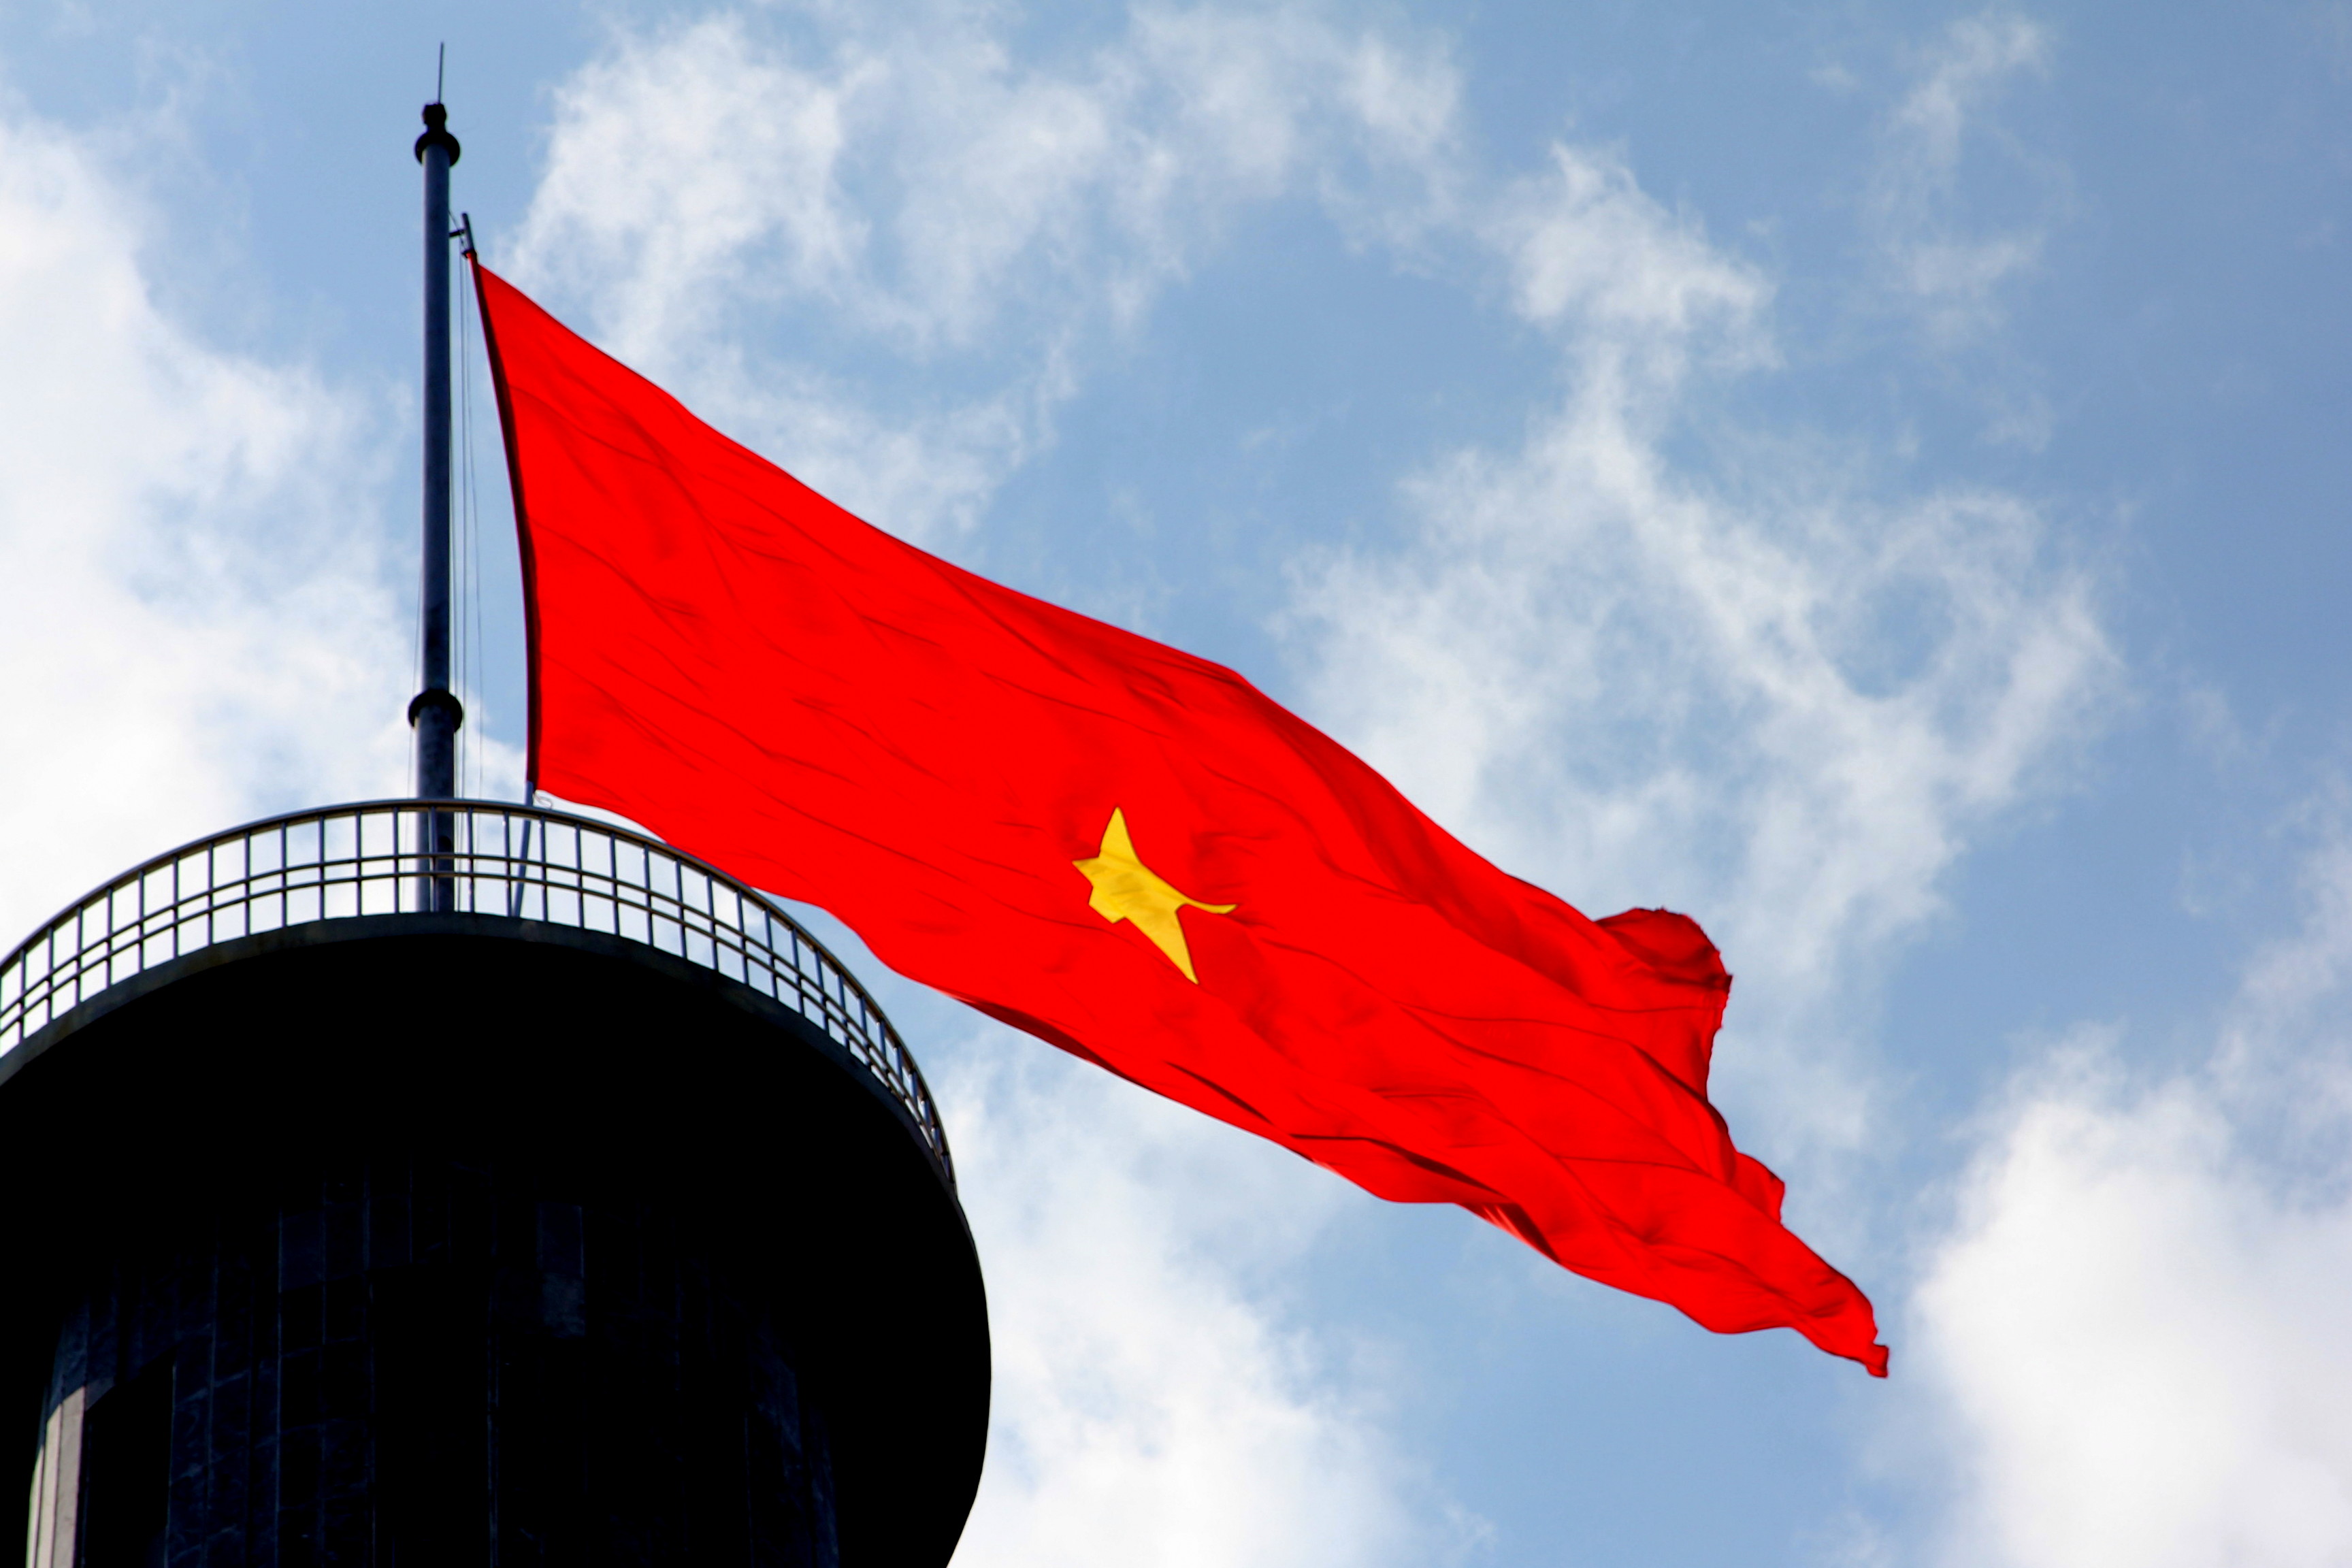 Hãy cùng chiêm ngưỡng hình ảnh lá cờ Việt Nam rực rỡ trong ánh nắng ban mai, thể hiện sự tự hào và tinh thần yêu nước của người Việt Nam.